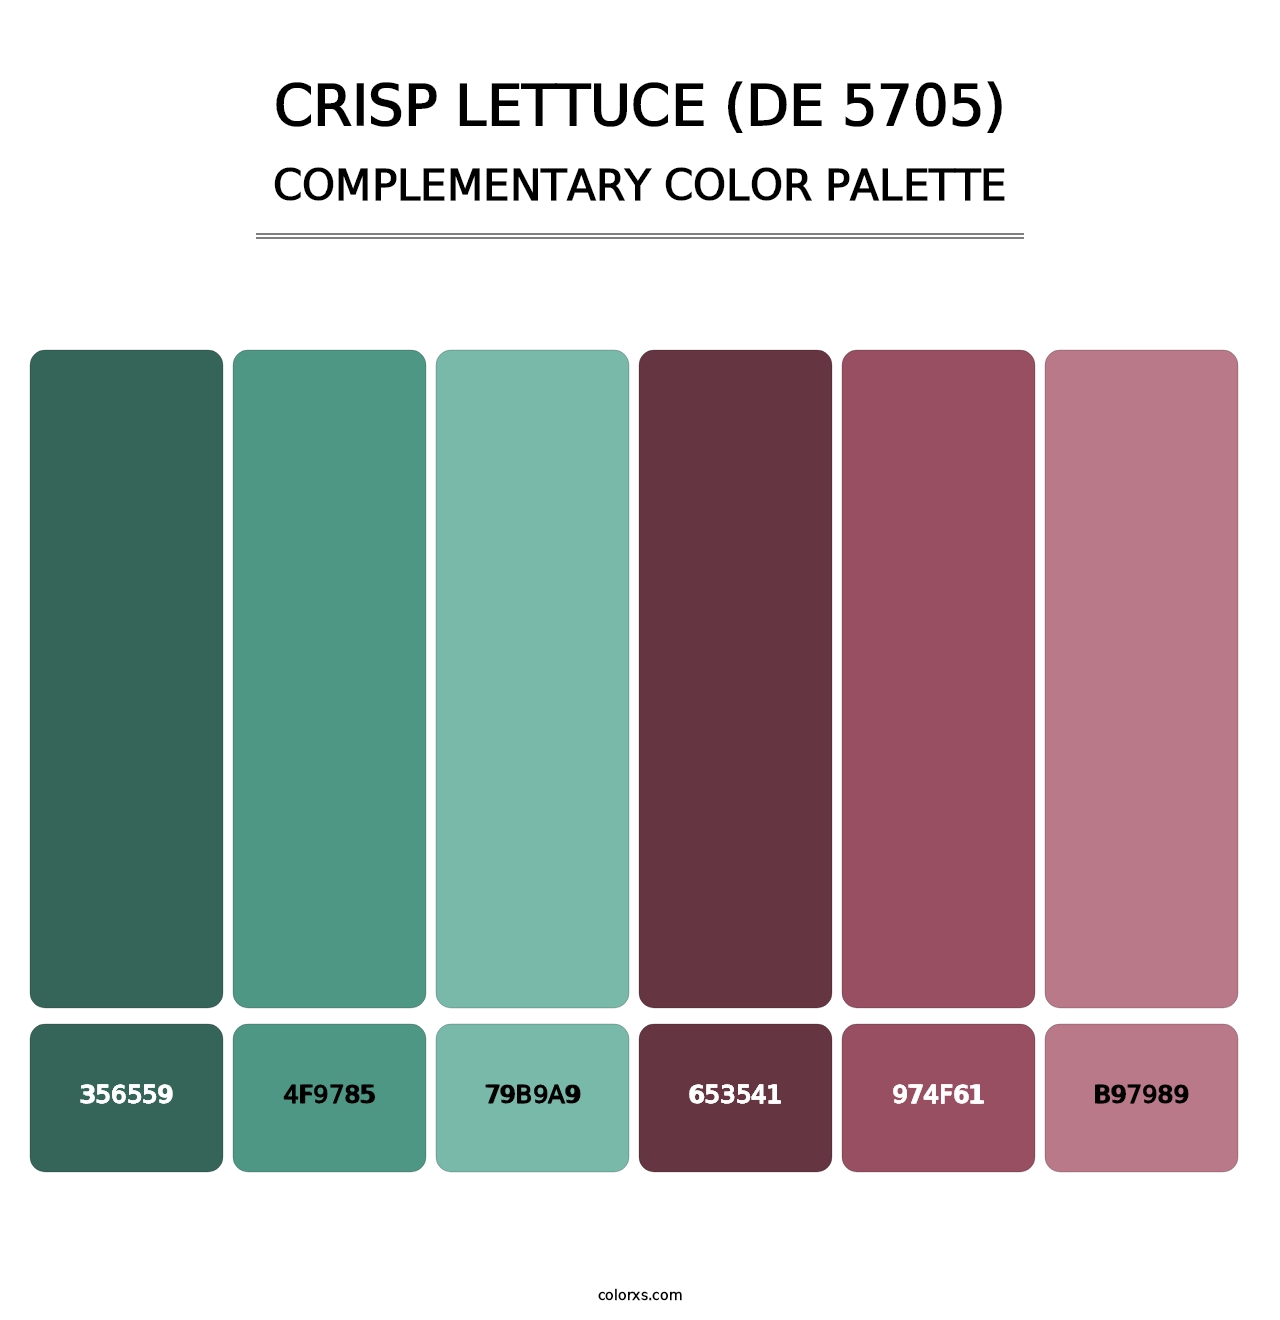 Crisp Lettuce (DE 5705) - Complementary Color Palette